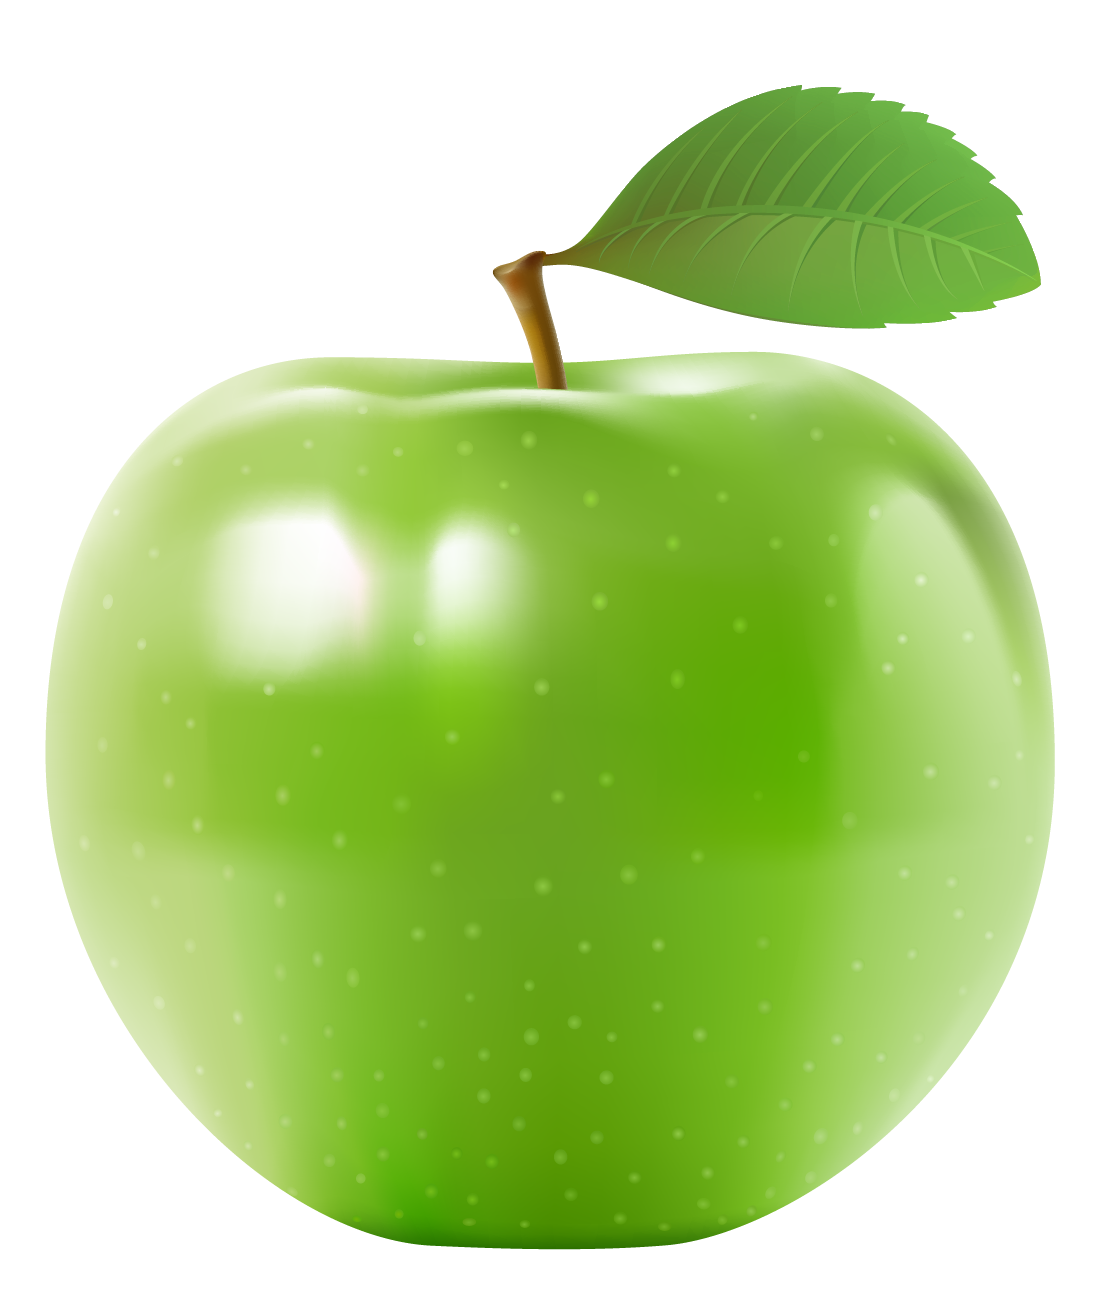 سكرابز تفاح للتصميم وبدون تحميل2024,احدث سكرابز تفاح اخصر2024,سكرابز تفاح احمر للتصميم2024